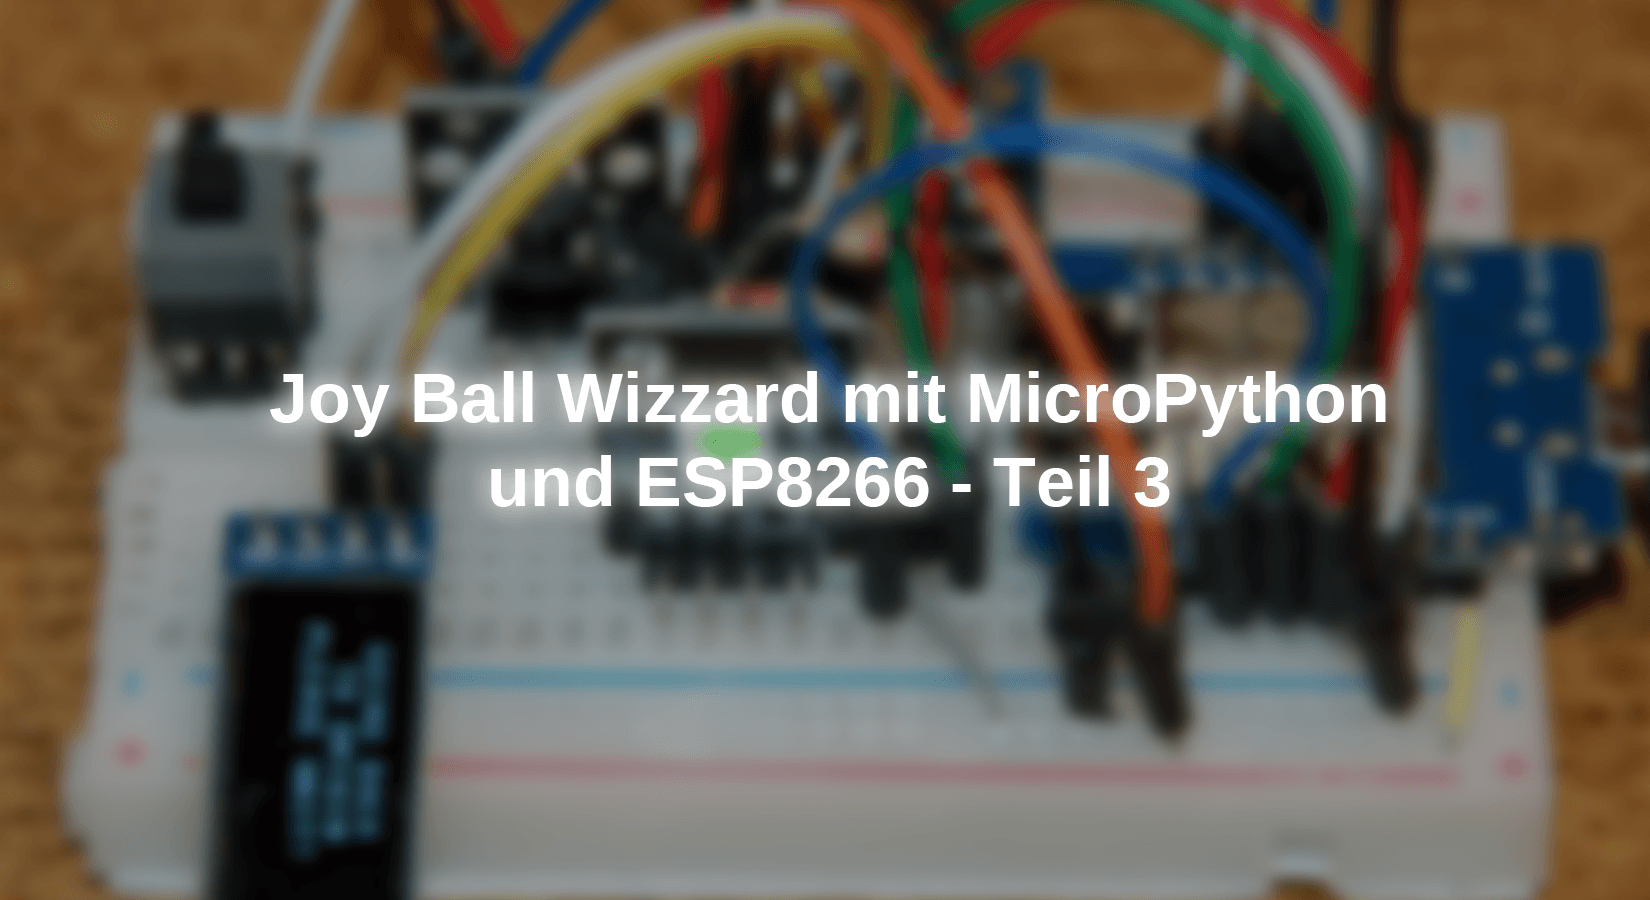 Joy Ball Wizzard mit MicroPython und ESP8266 - Teil 3 - AZ-Delivery